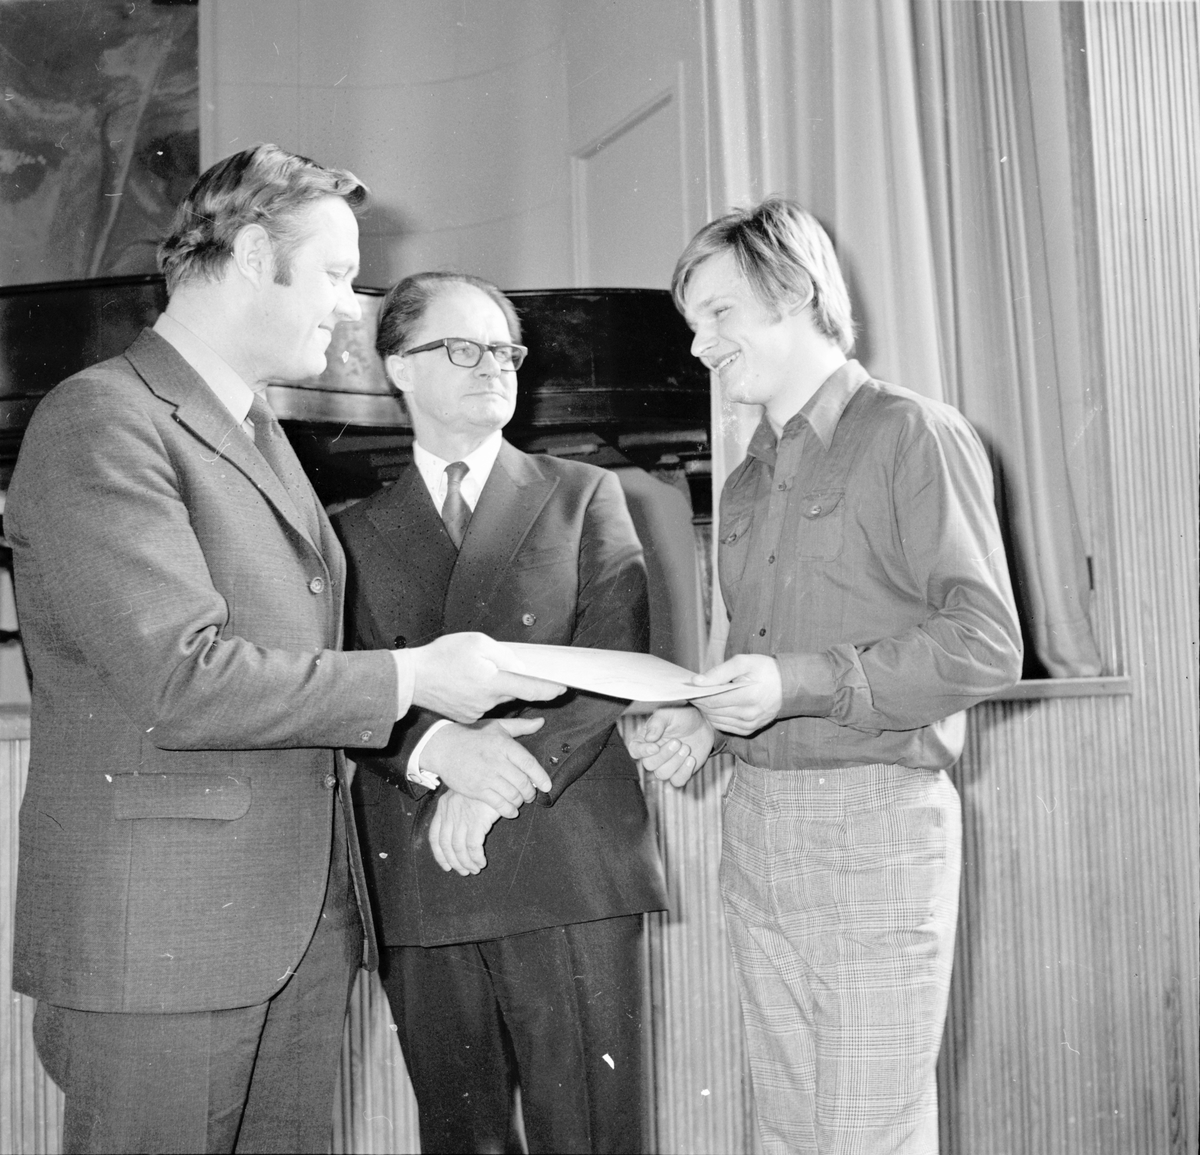 I mitten rektor Anders Strömberg, t.h. Börje Perers, Nytorp, Kursavslutning,
Maj 1972